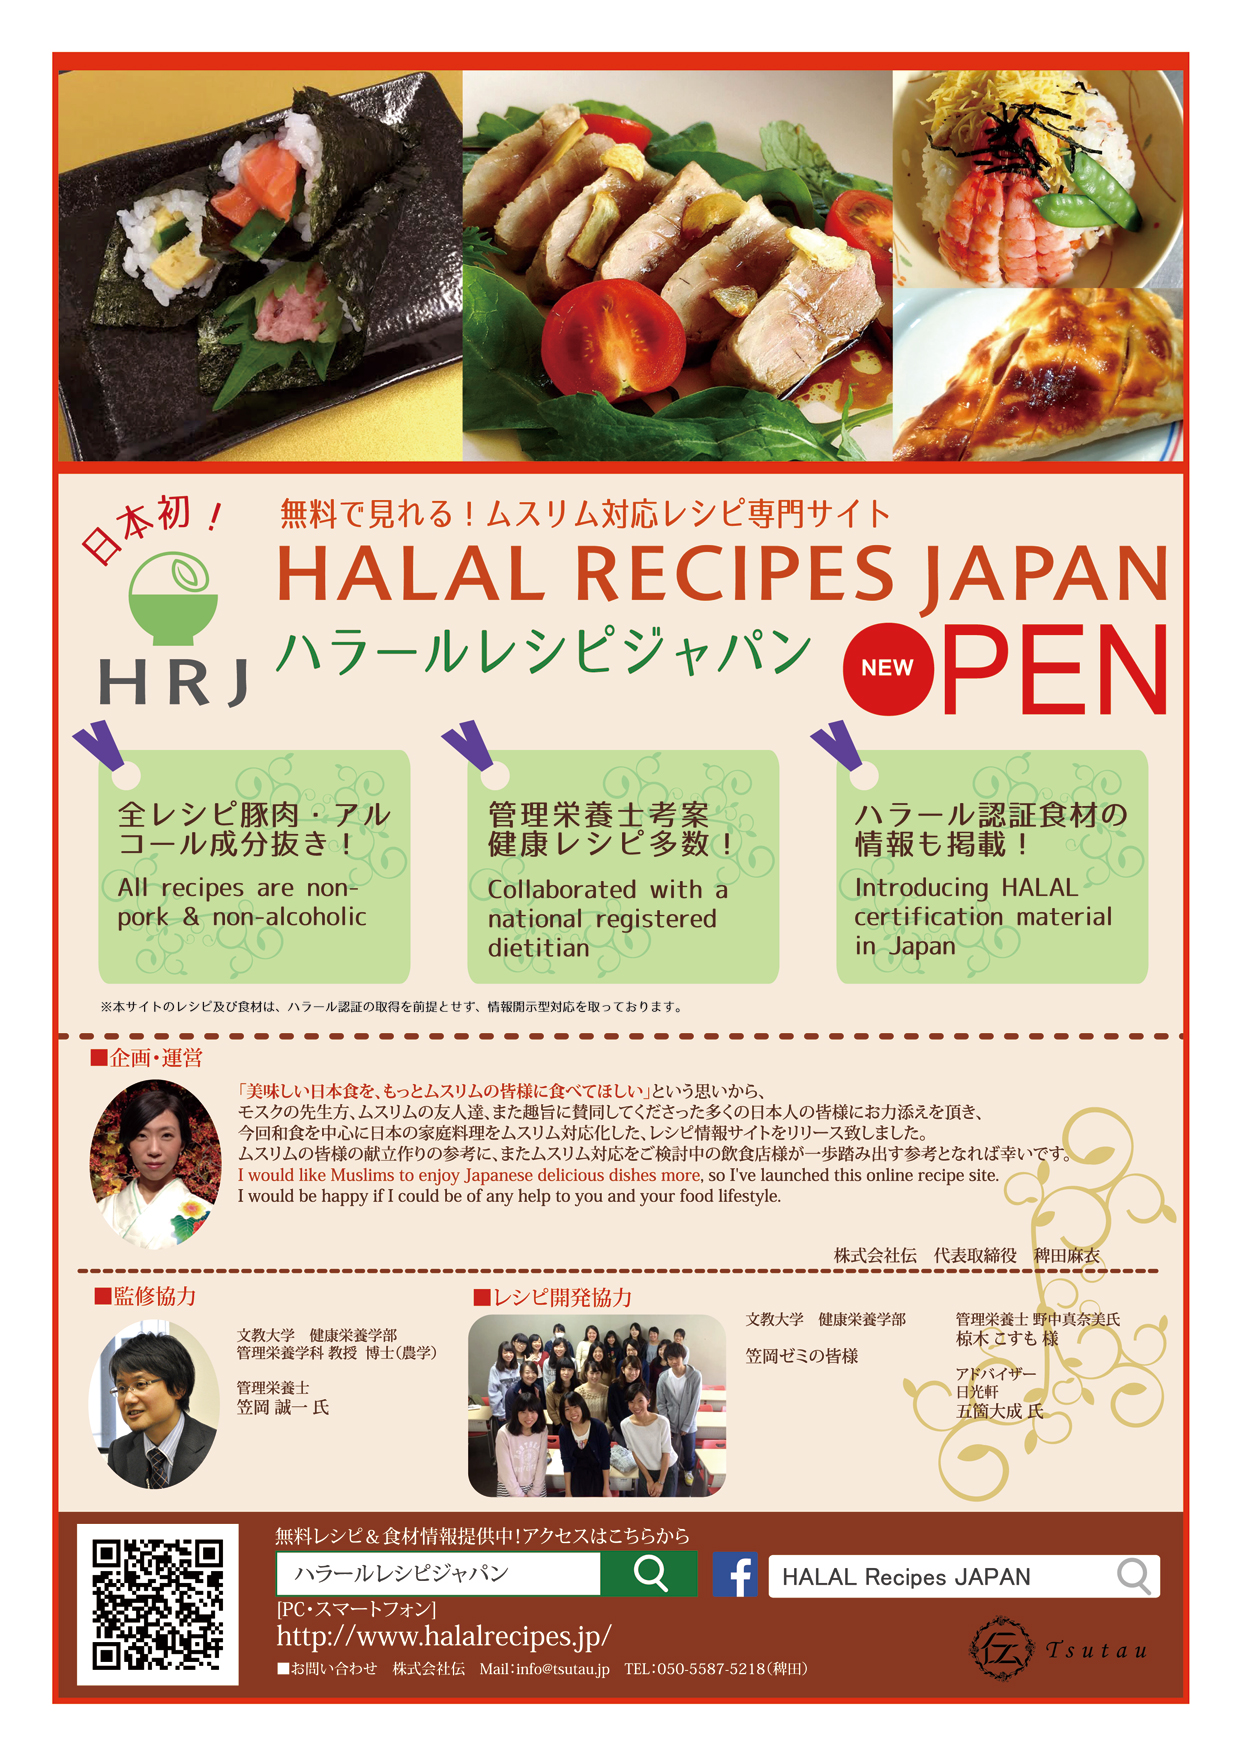 文教大学の健康栄養学部生がハラールレシピの開発協力 -- 日本初のムスリム対応レシピ検索サイトが11月25日公開